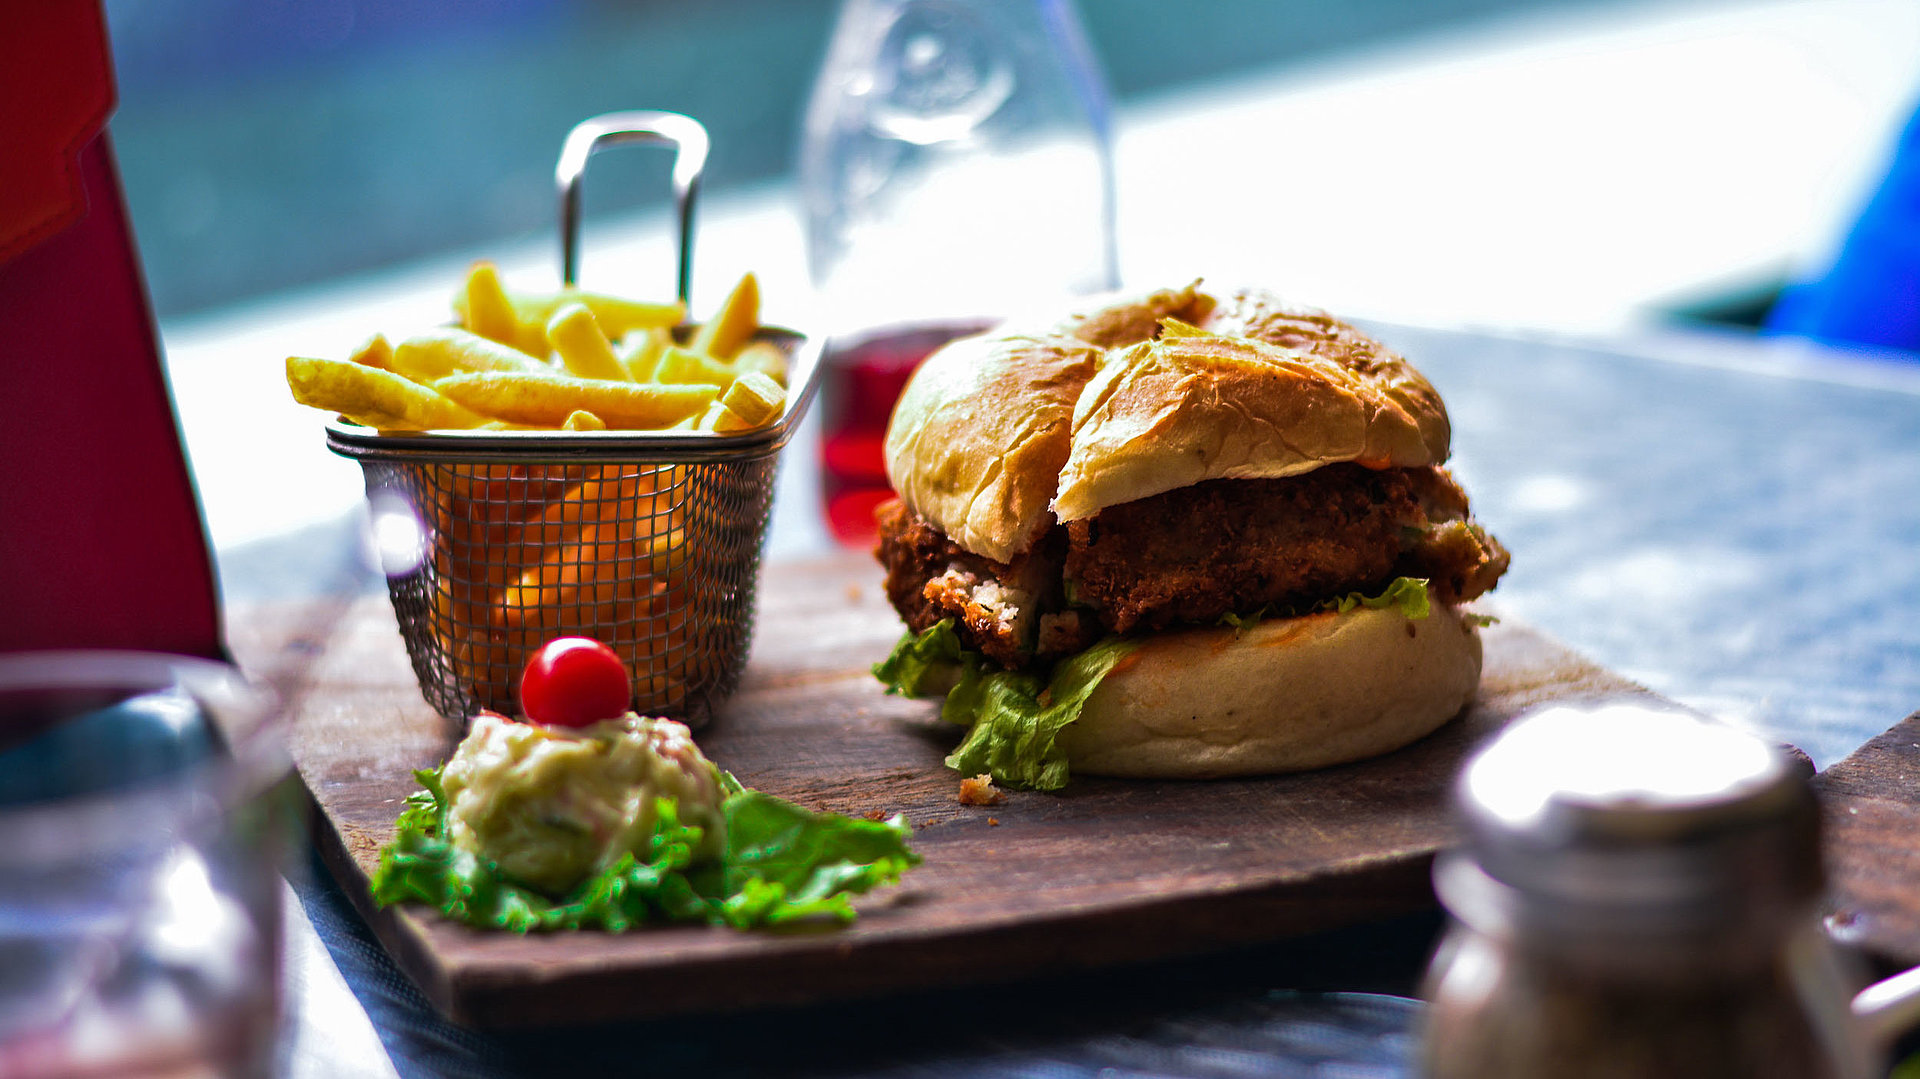 Internationale Gastronomie in Franken - im Restaurant; Burger, Pommes und Salat auf einem Holzbrett